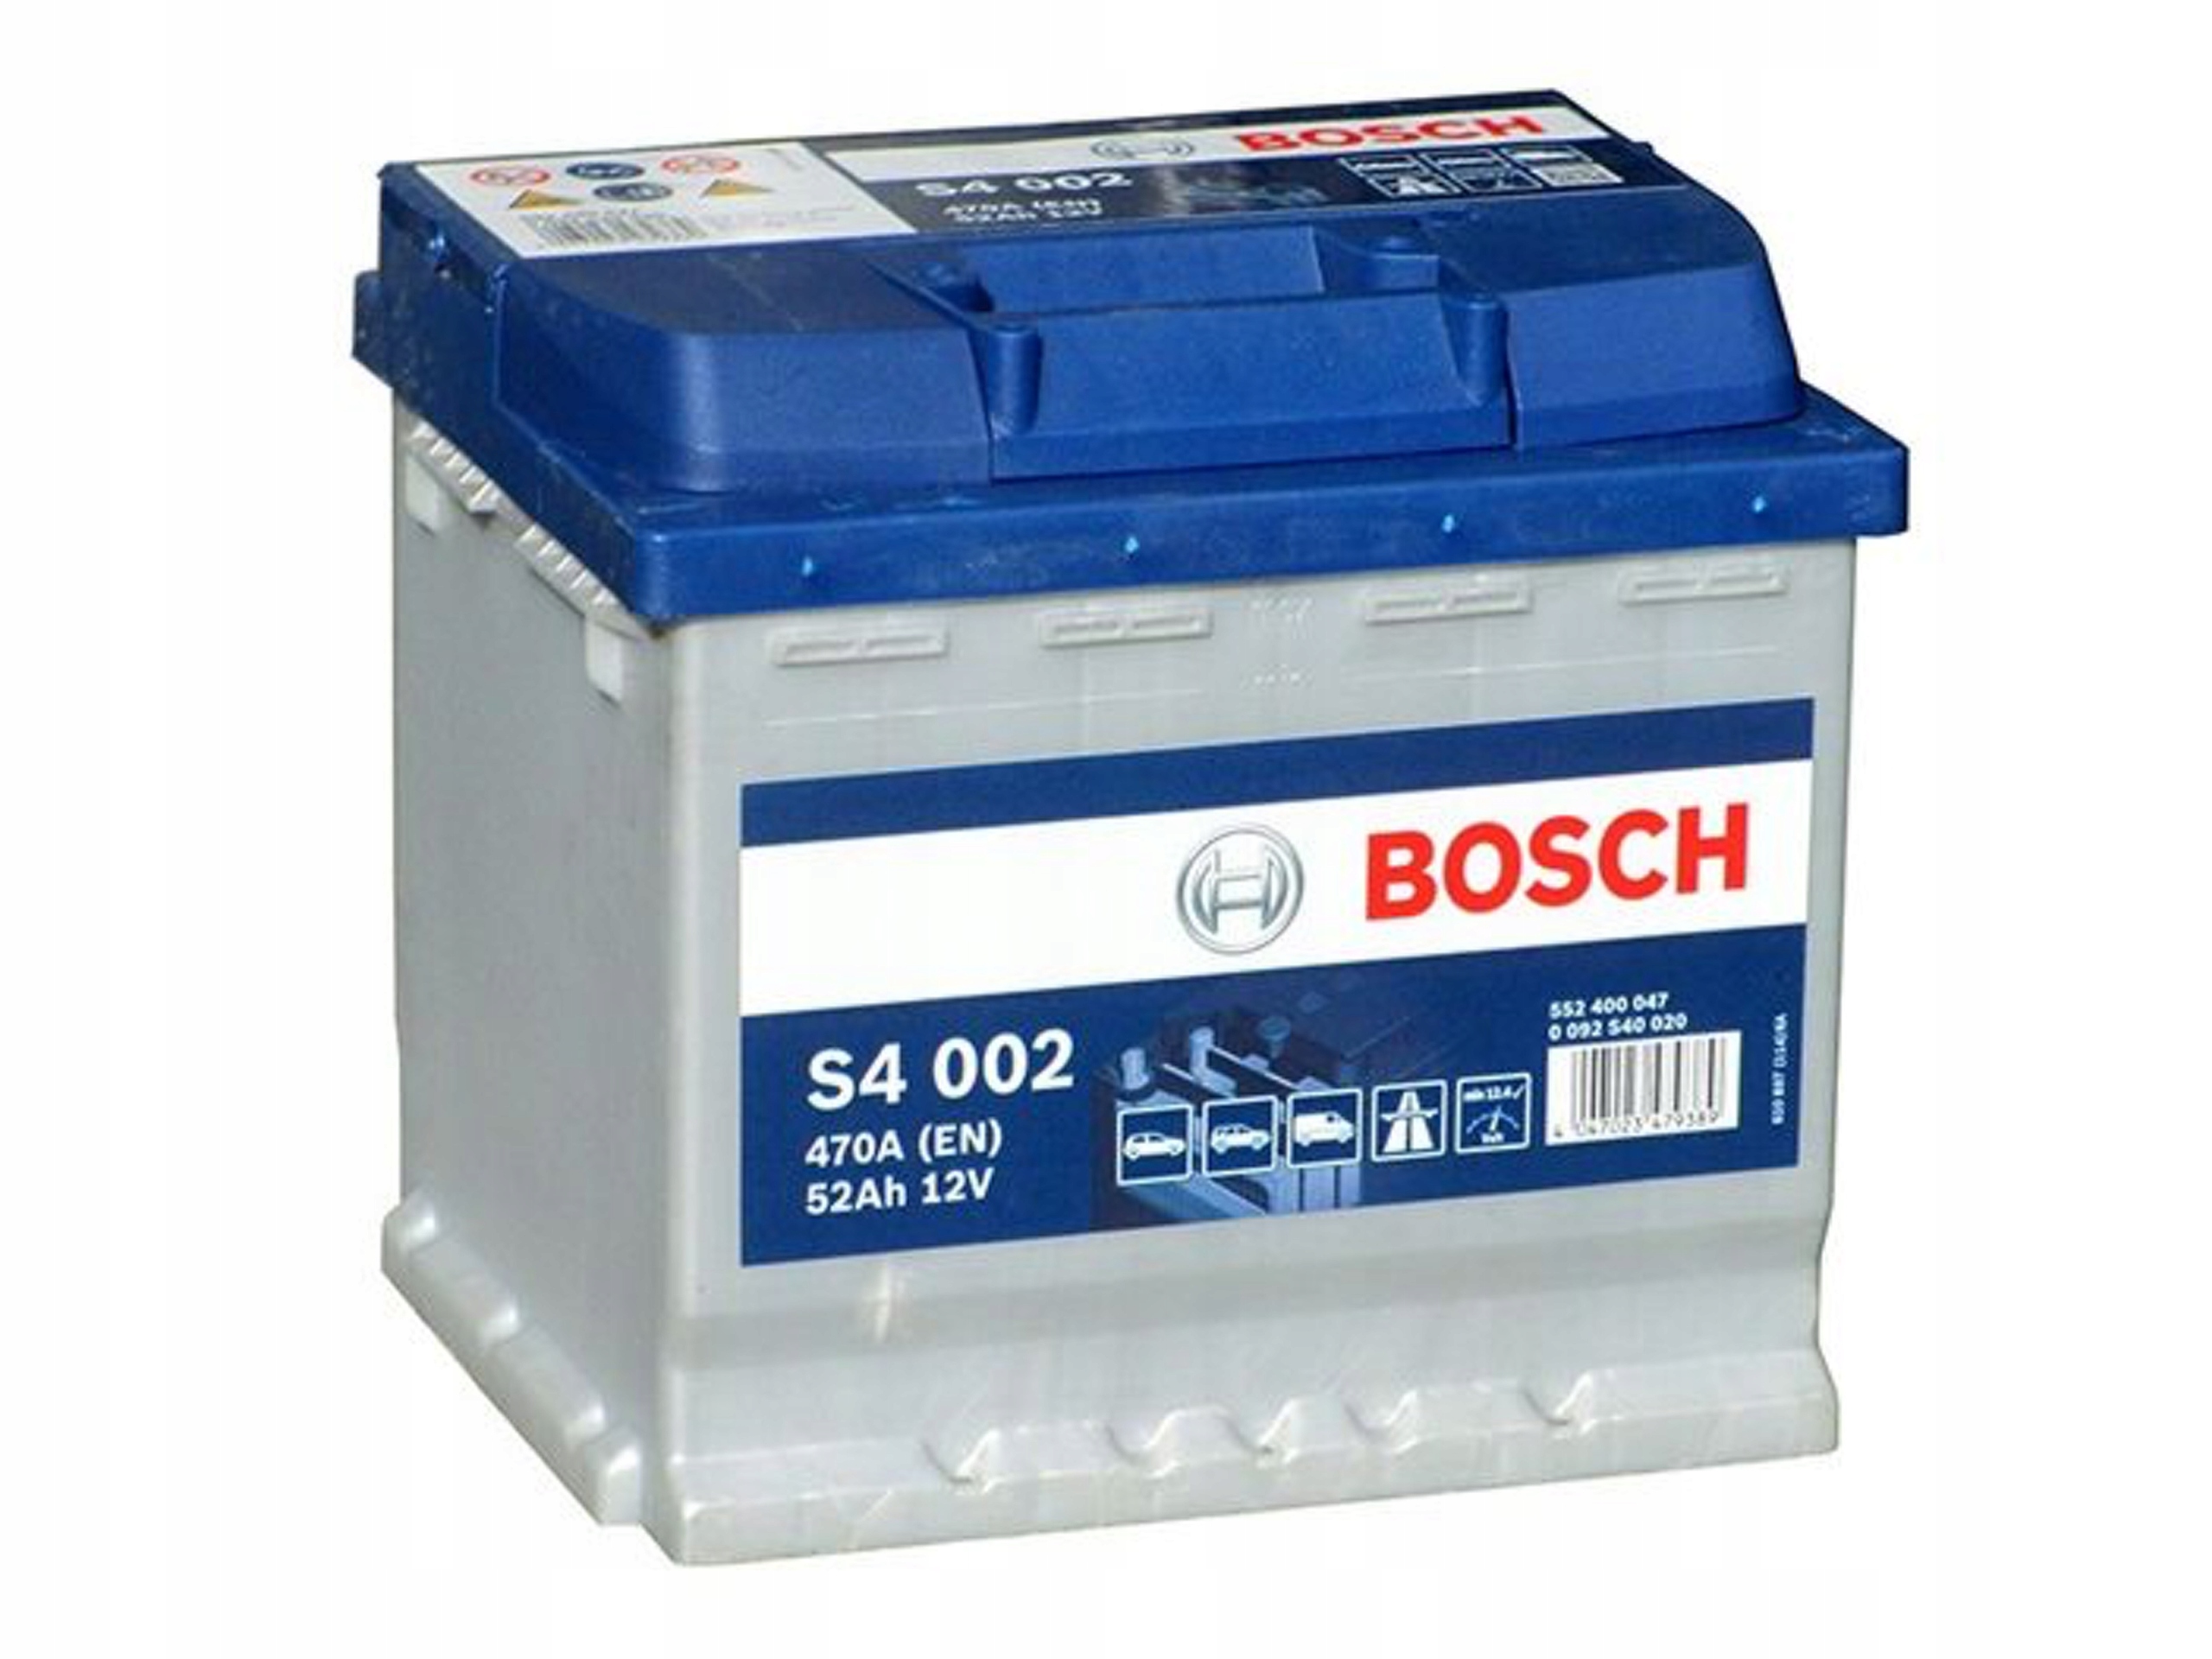 Легковой аккумулятор. Bosch s4 002. Аккумулятор Bosch s4 002. Bosch s4002 аккумулятор. Аккумулятор Bosch 12v.